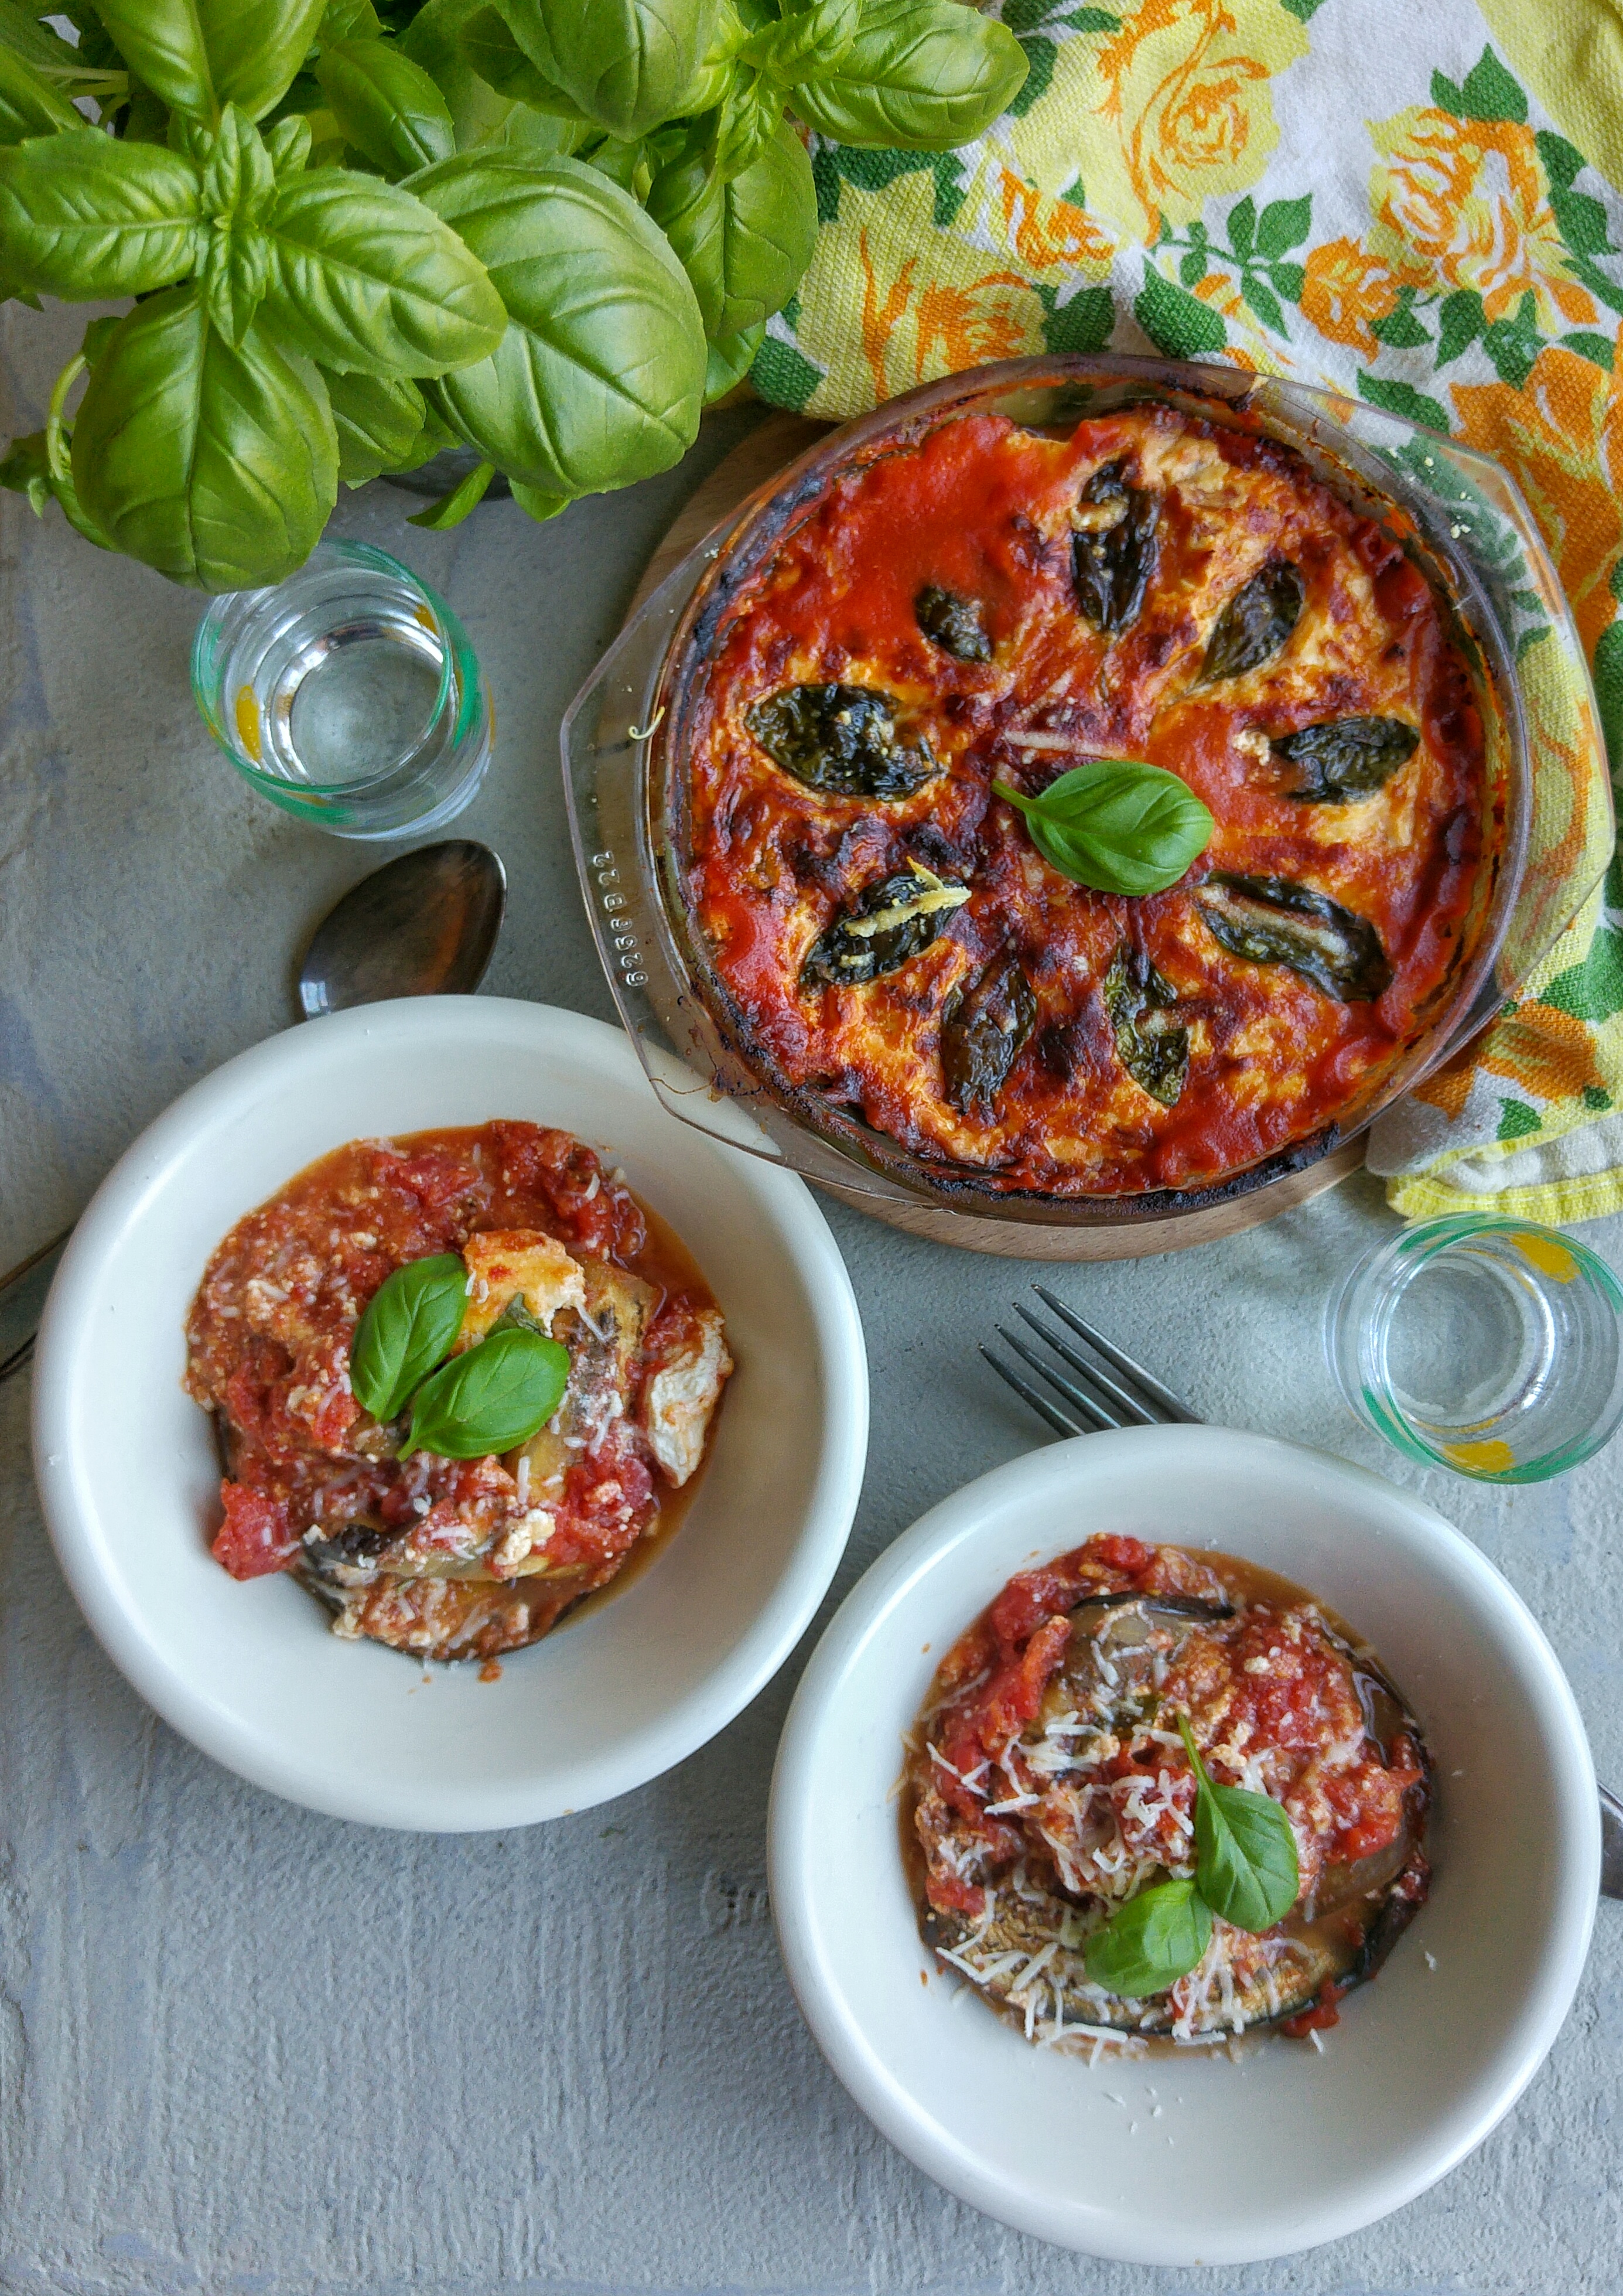 Gegrilde aubergine met tomaat, kaas en basilicum uit de oven, à la Sophia Loren; dat klinkt als comfort food - en dat ís het ook! En het is nog gezond ook, want deze lasagna maak je met plakken gegrilde aubergine i.p.v van lasagnevellen. Zo kom je wel aan je 200 gram groenten per dag :-)